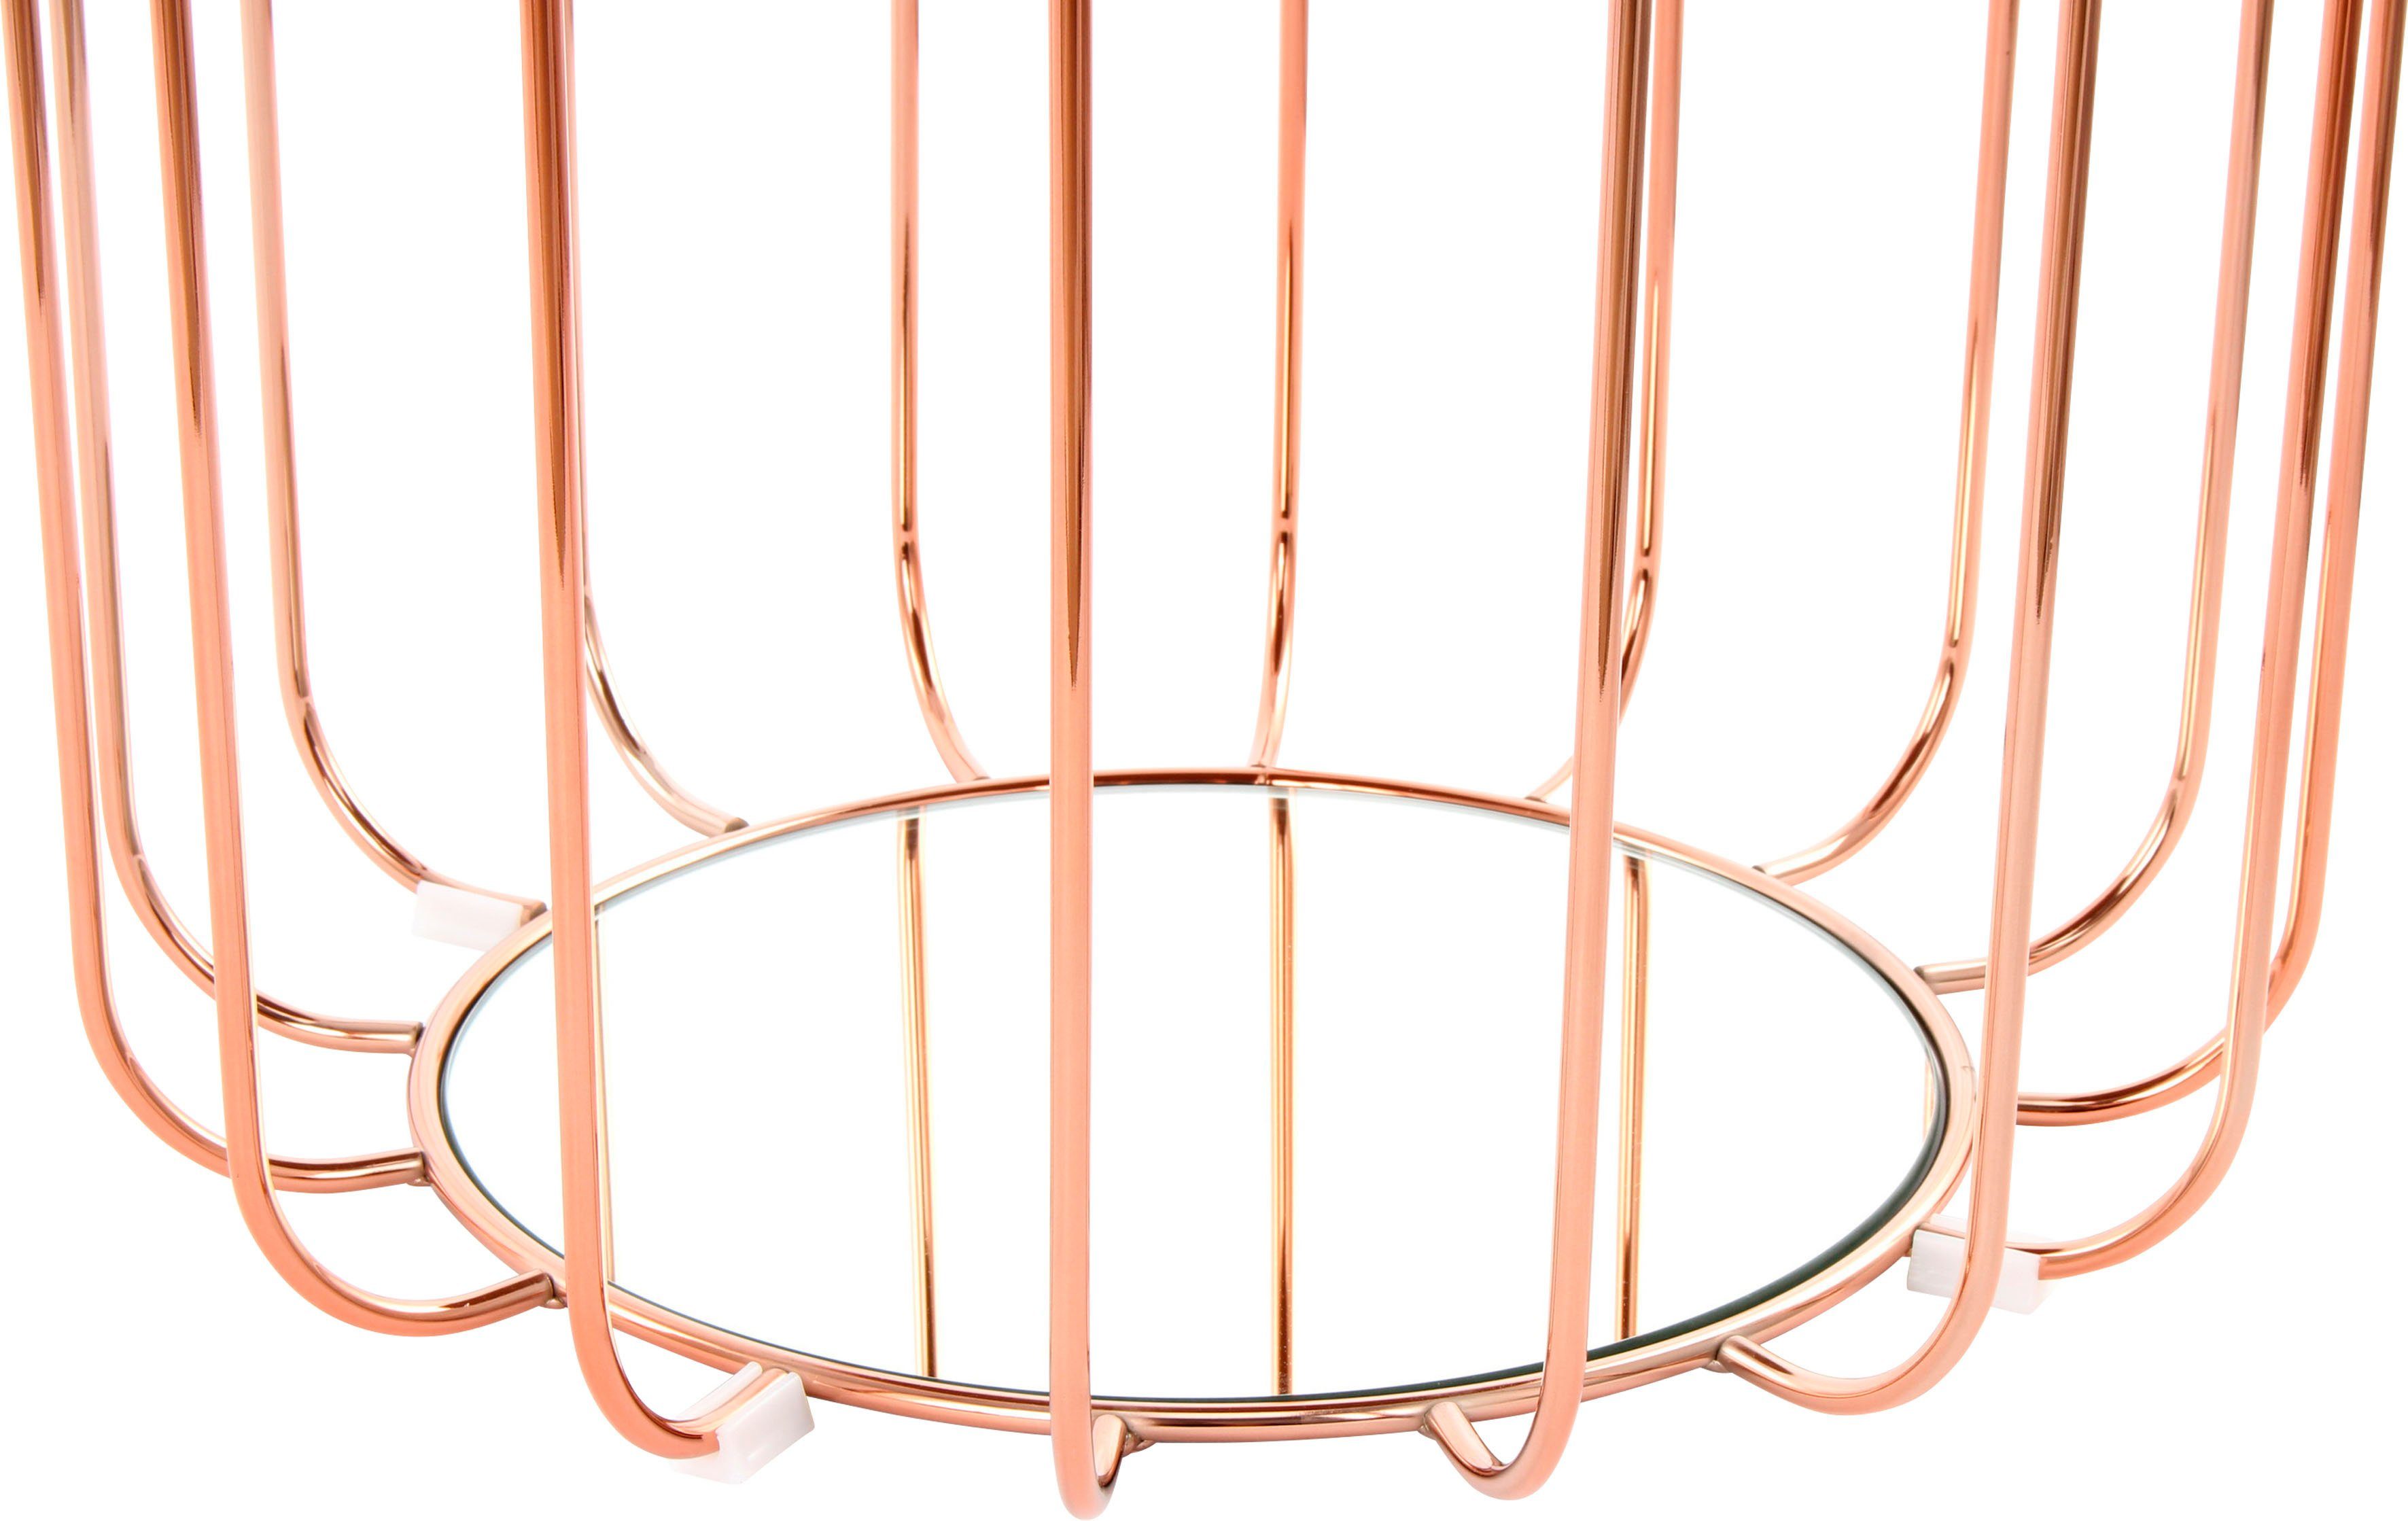 Kayoom Beistelltisch Beistelltisch / Pouf beige Spiegelglas praktisch | umzuwandeln rosé Comfortable 110, Tisch oder in Hocker, mit